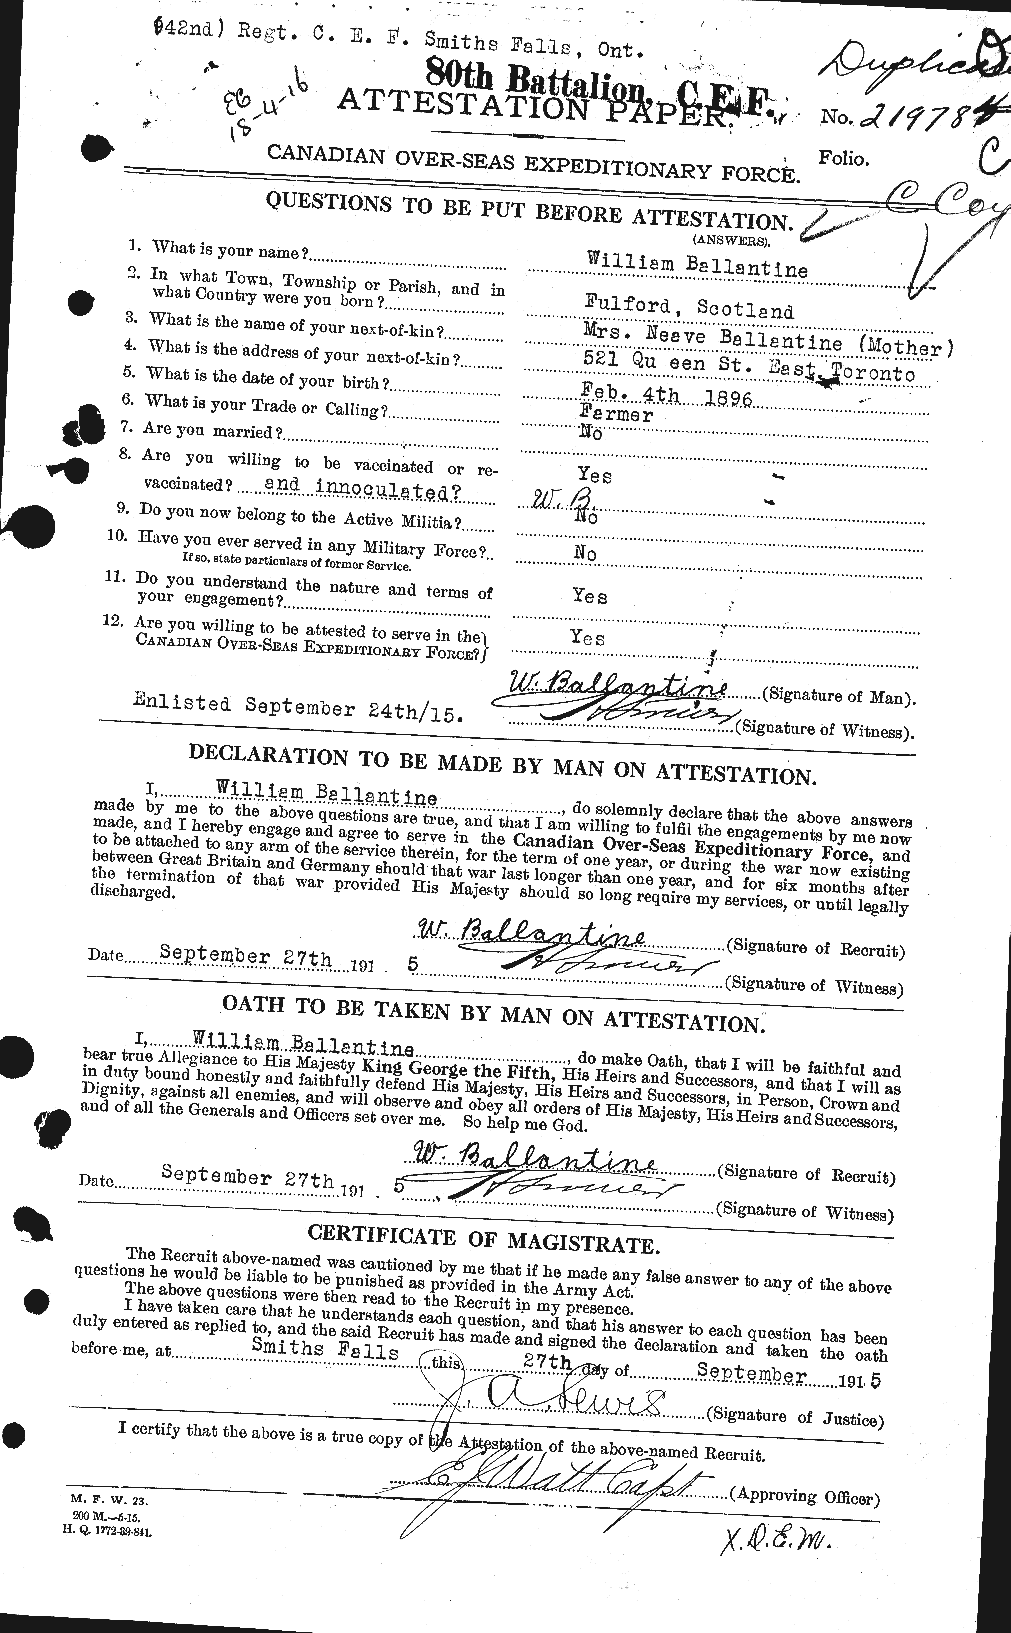 Dossiers du Personnel de la Première Guerre mondiale - CEC 219840a